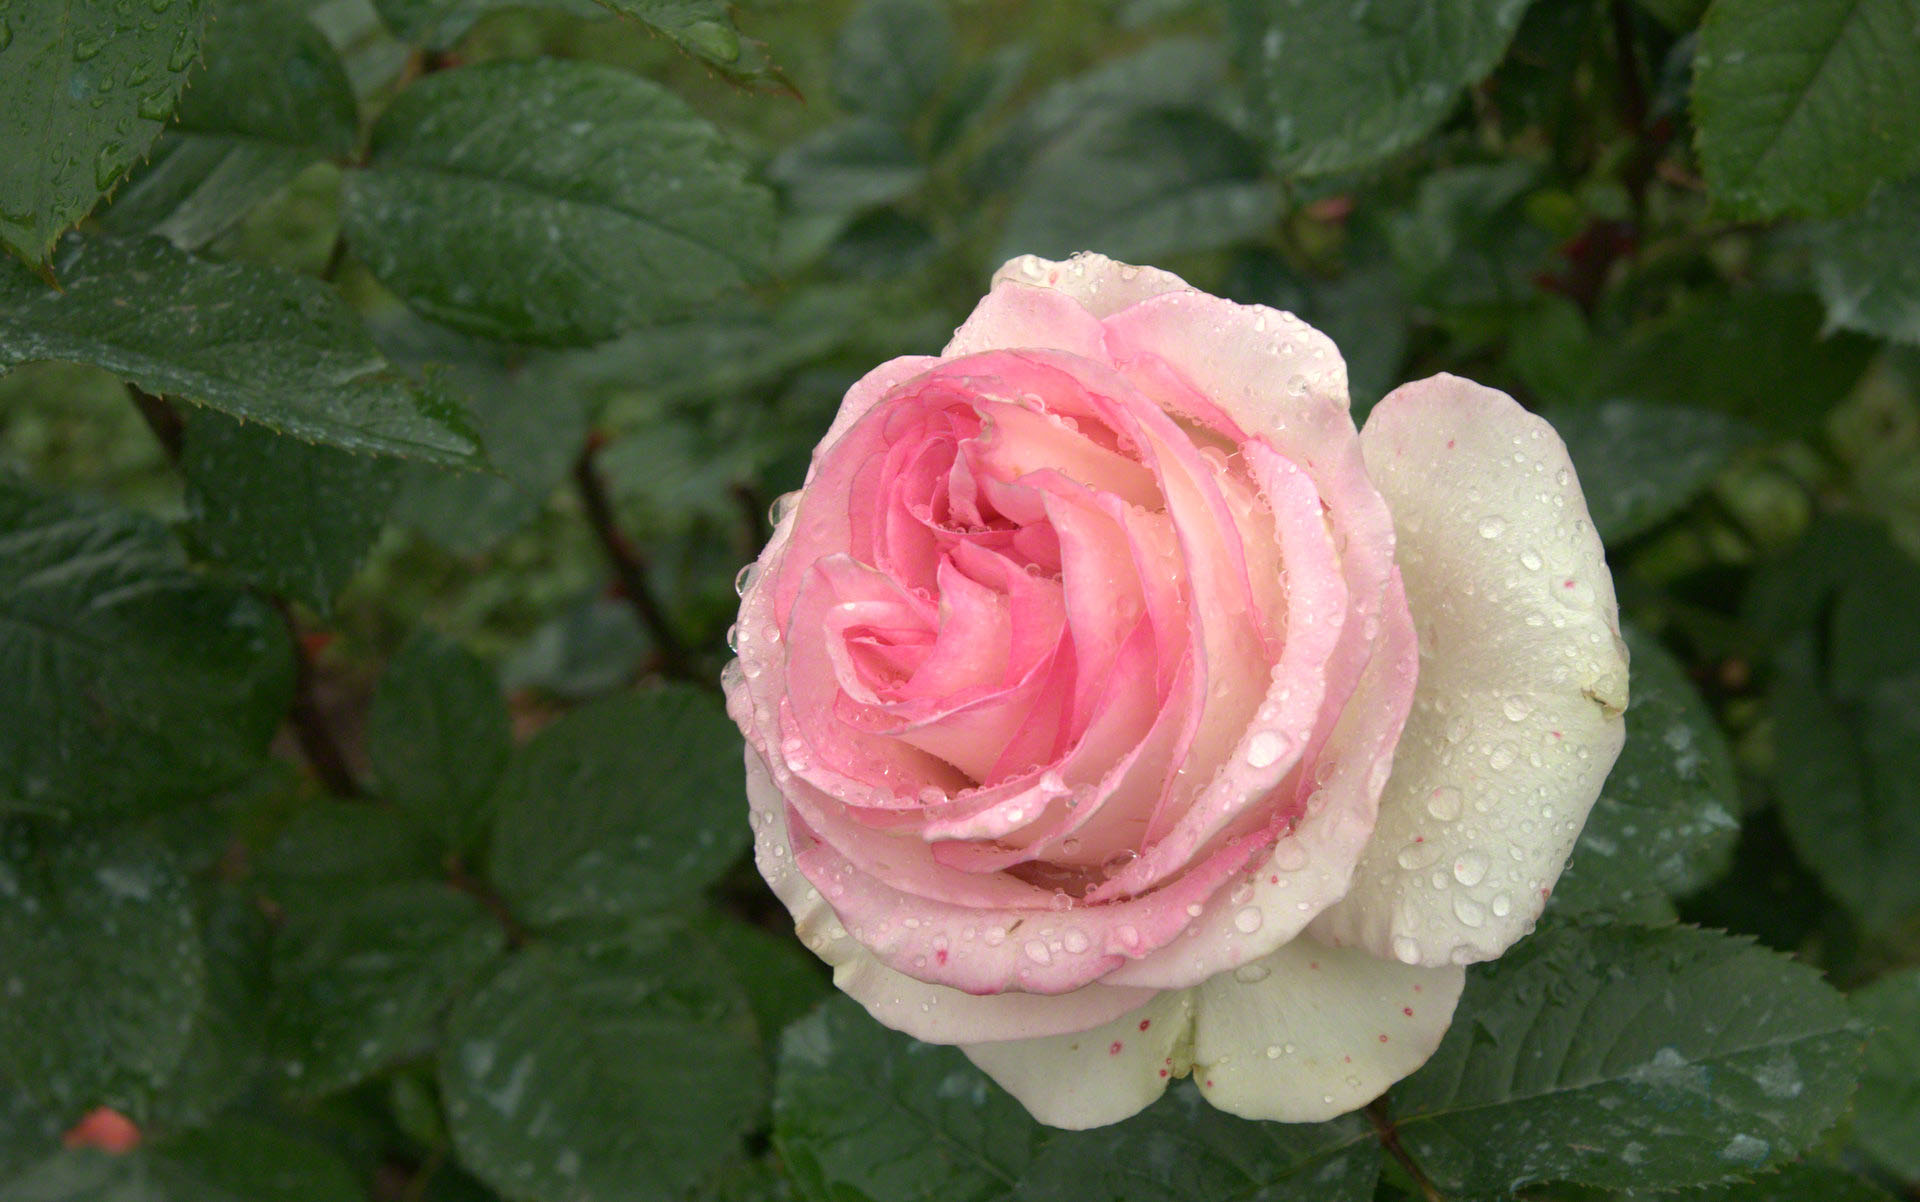 raindrop rose wallpaper